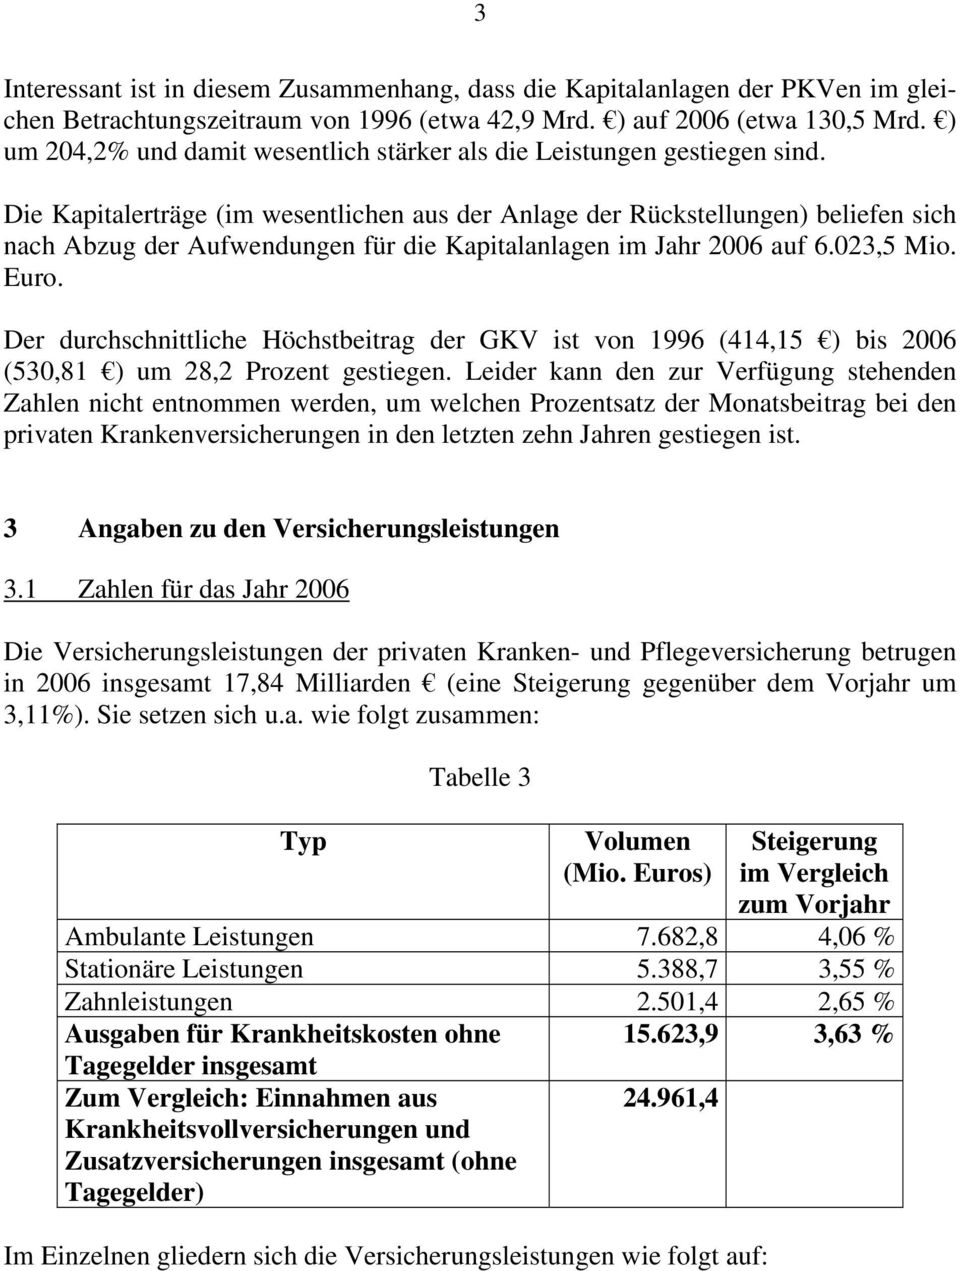 Die Kapitalerträge (im wesentlichen aus der Anlage der Rückstellungen) beliefen sich nach Abzug der Aufwendungen für die Kapitalanlagen im Jahr 2006 auf 6.023,5 Mio. Euro.